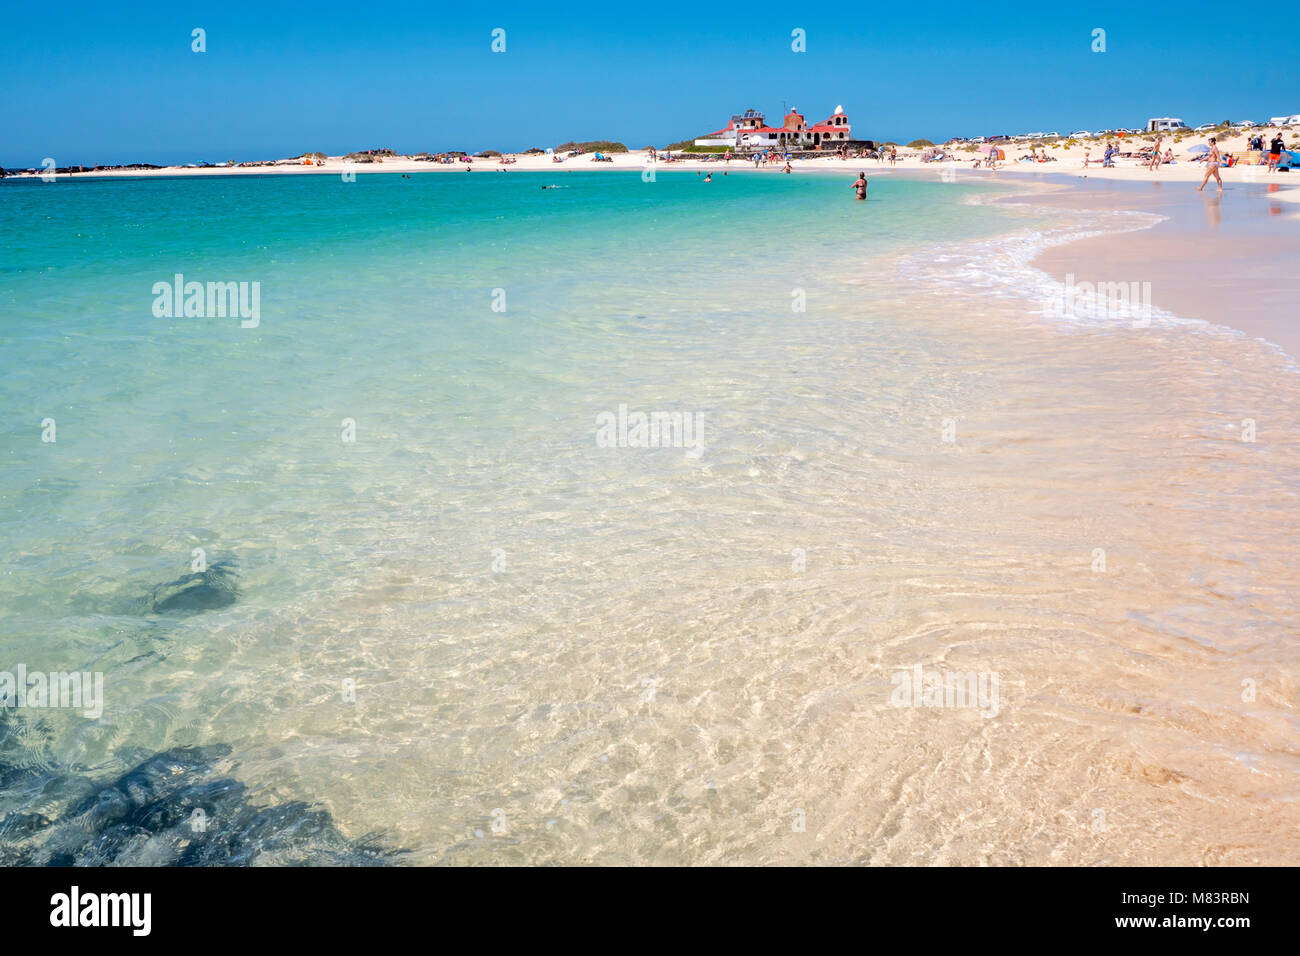 Shell Beach (Playa de la Concha) El Cotillo La Oliva Fuerteventura  Canary Islands Spain Stock Photo